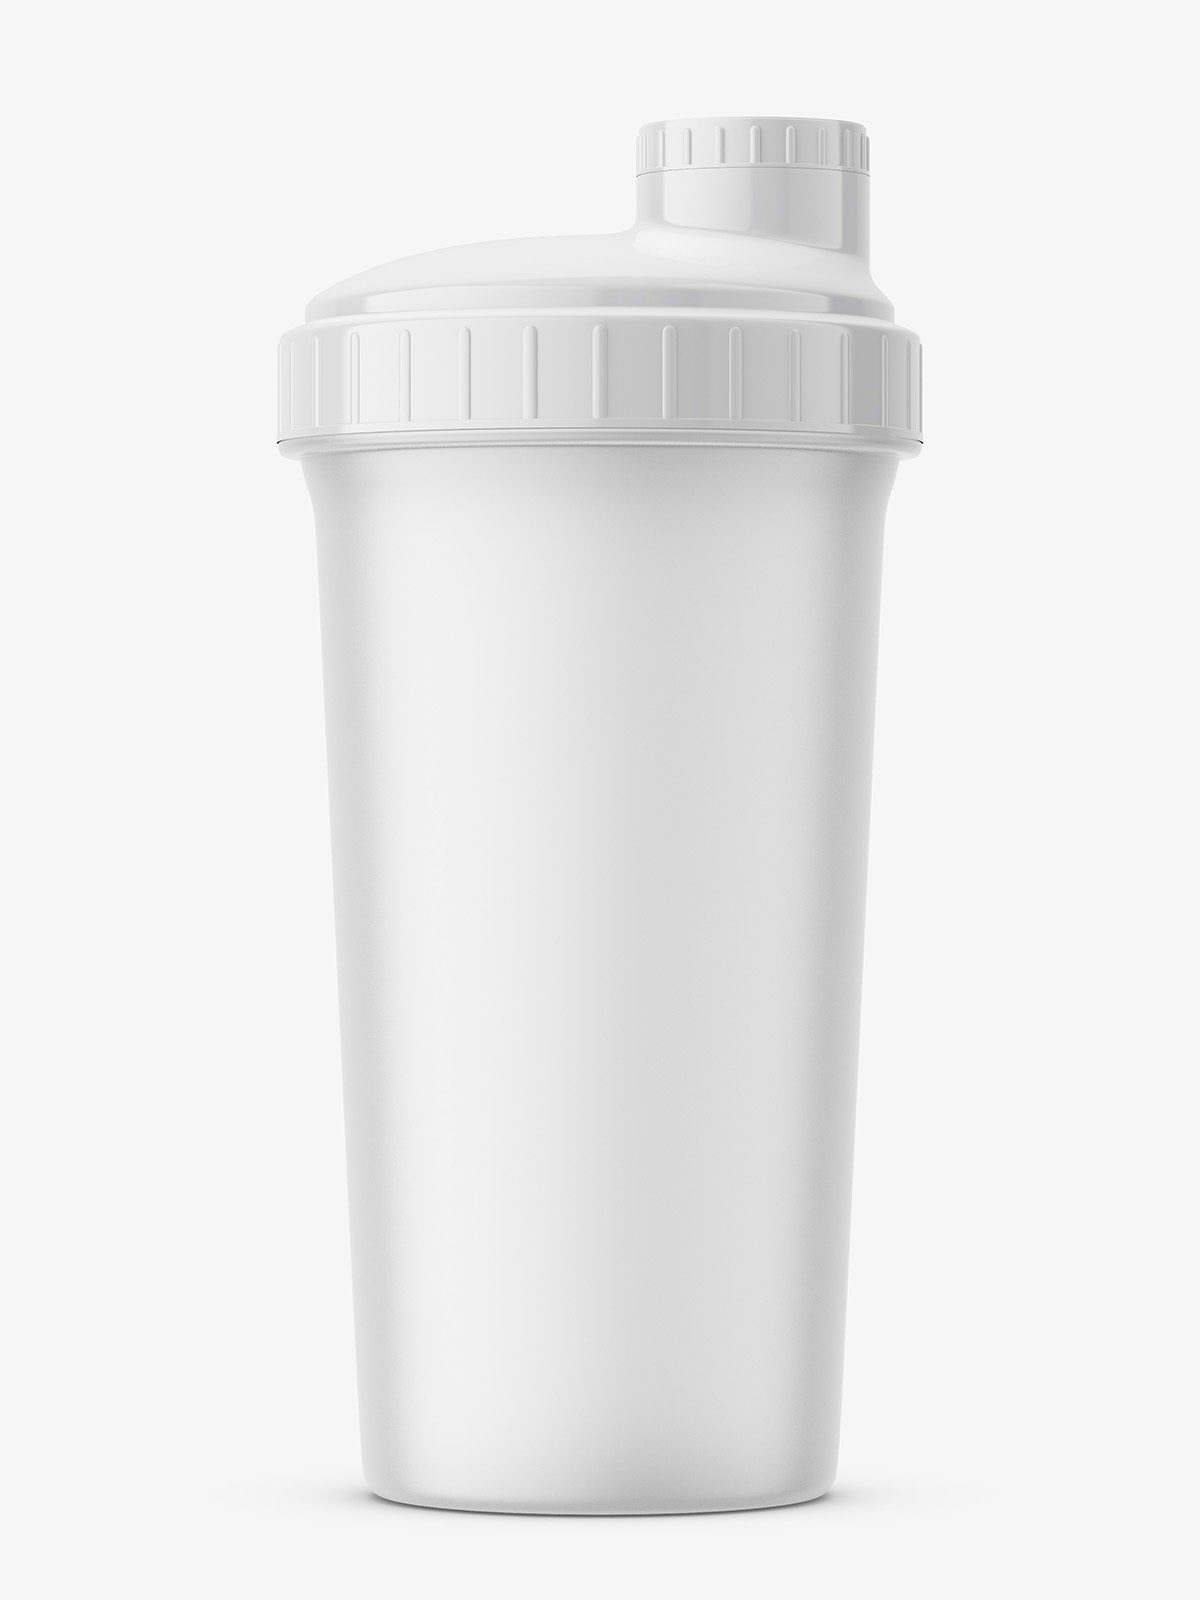 White Shaker Bottle Mockup / Premium Vector 3d Mock Up Realistic Metallic Shaker Bottle / Free ...